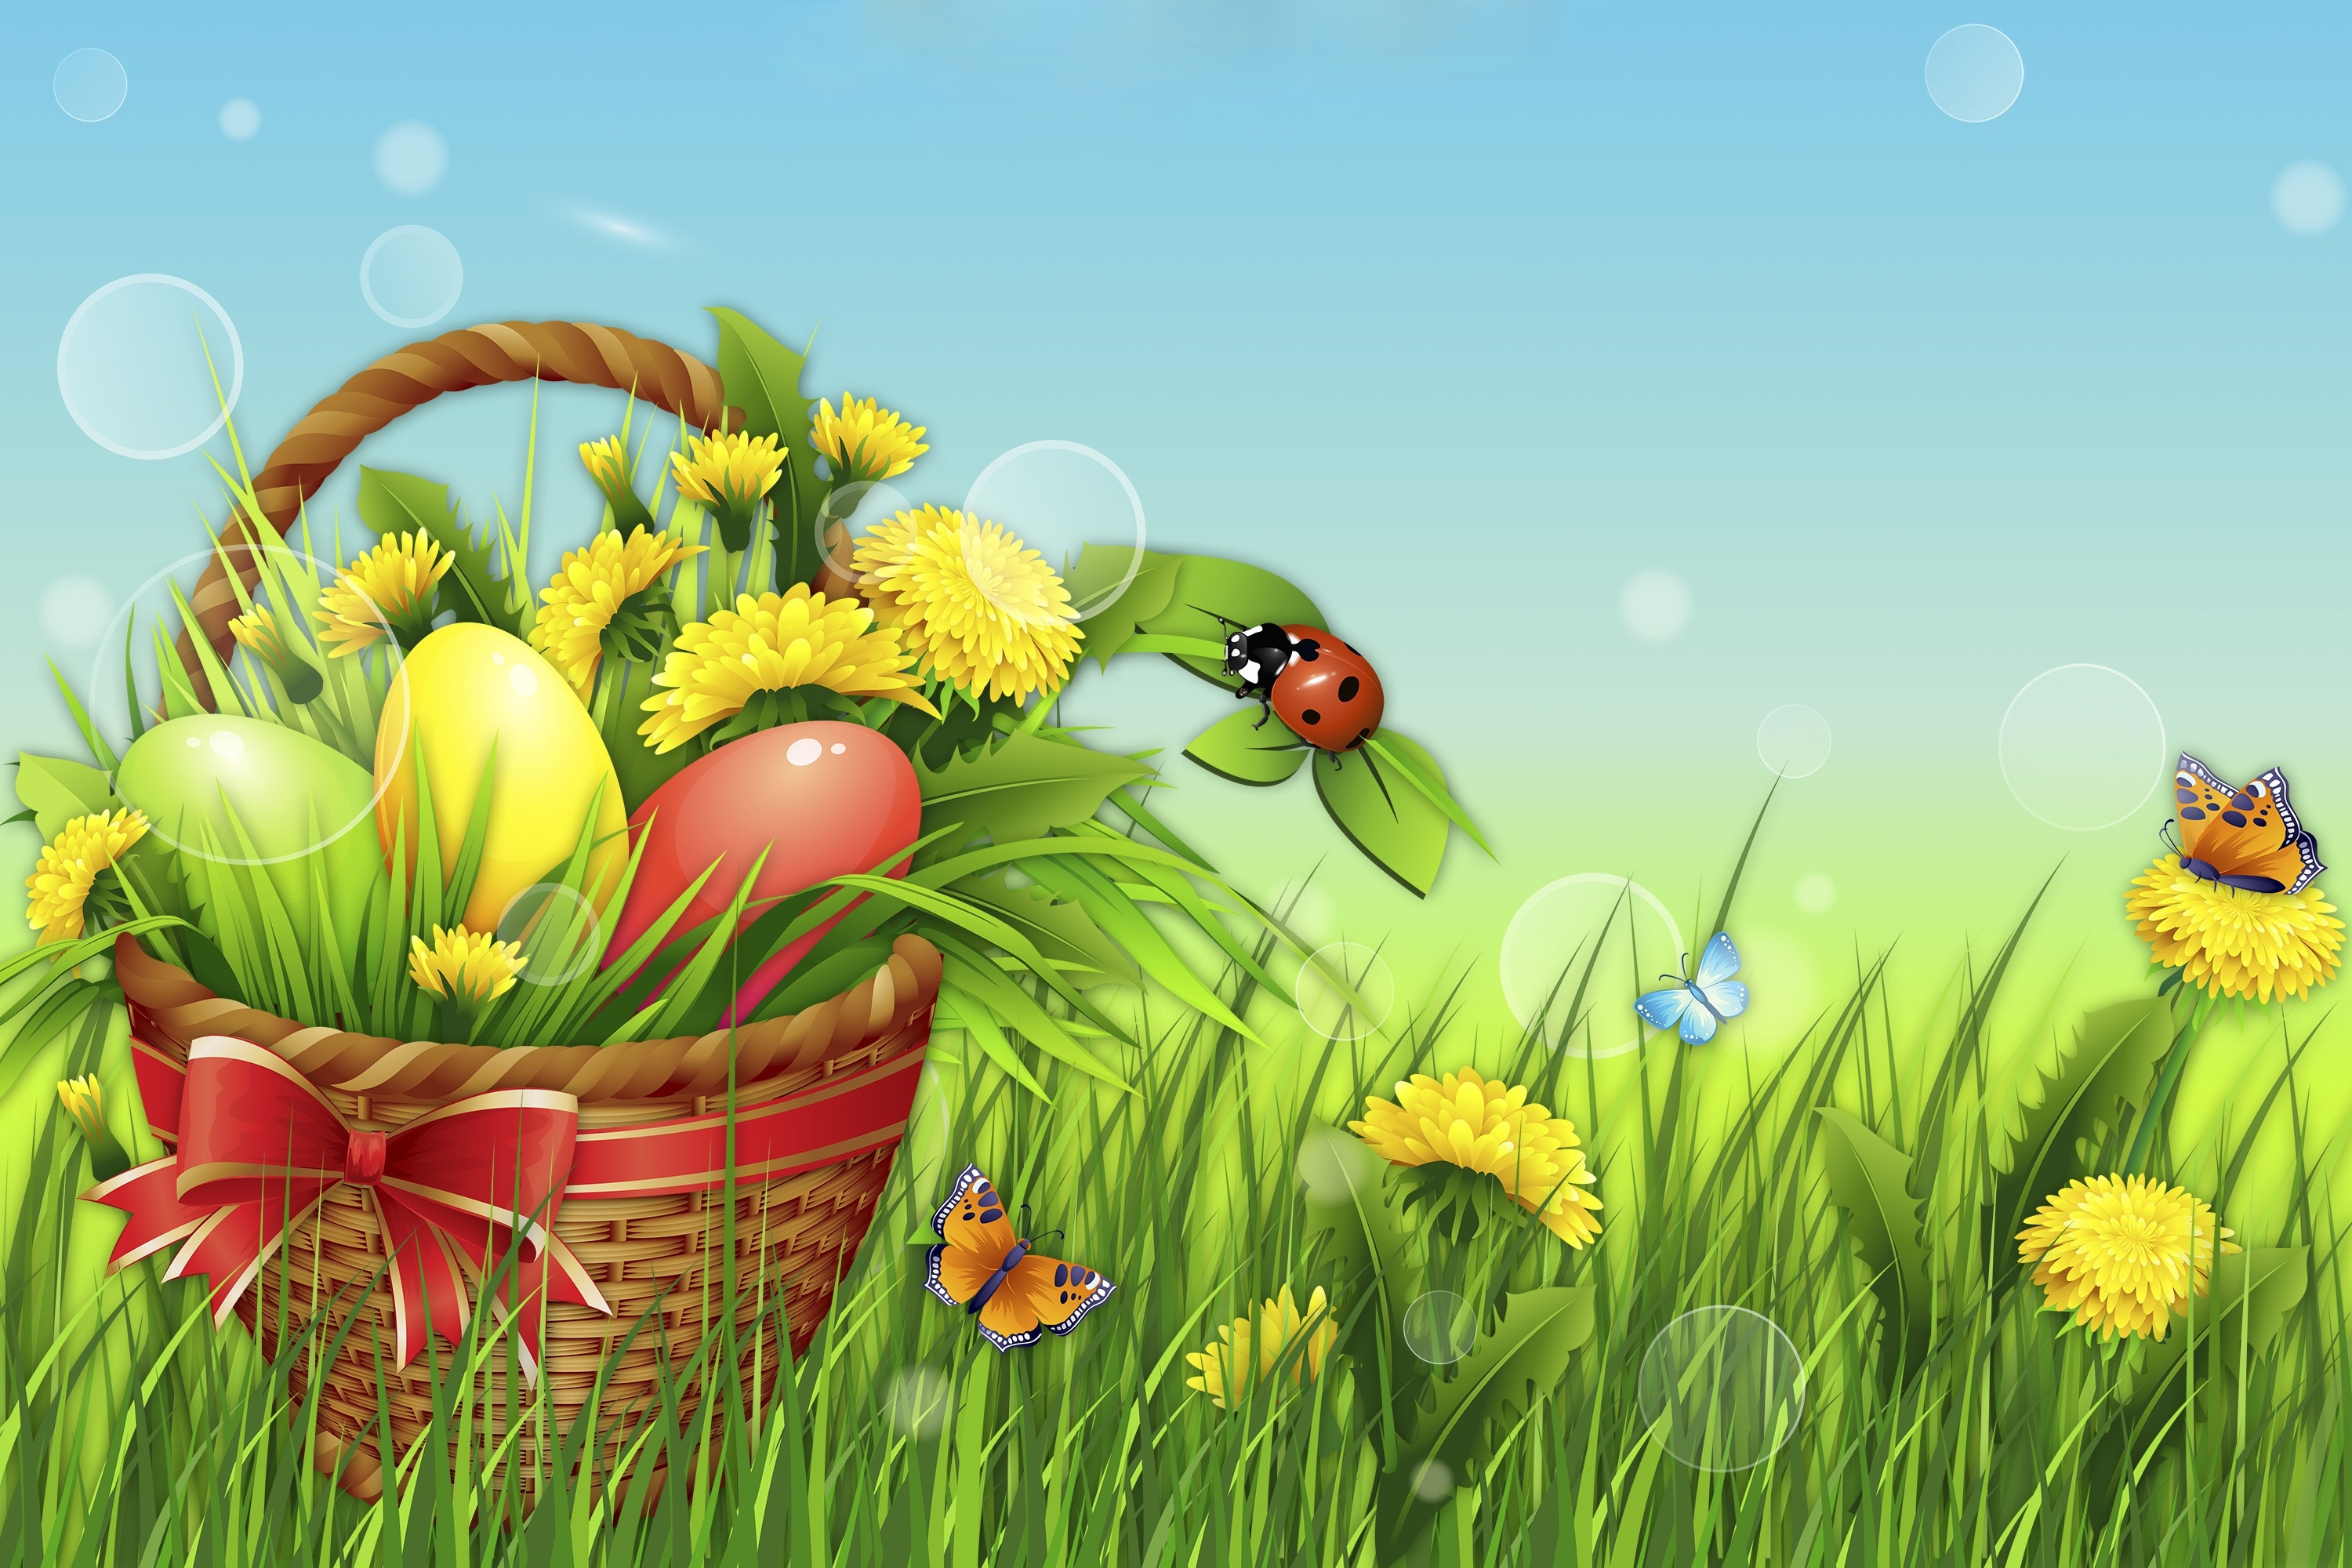 Descarga gratuita de fondo de pantalla para móvil de Hierba, Pascua, Flor, Día Festivo, Mariposa, Cesta, Huevo, Huevo De Pascua.